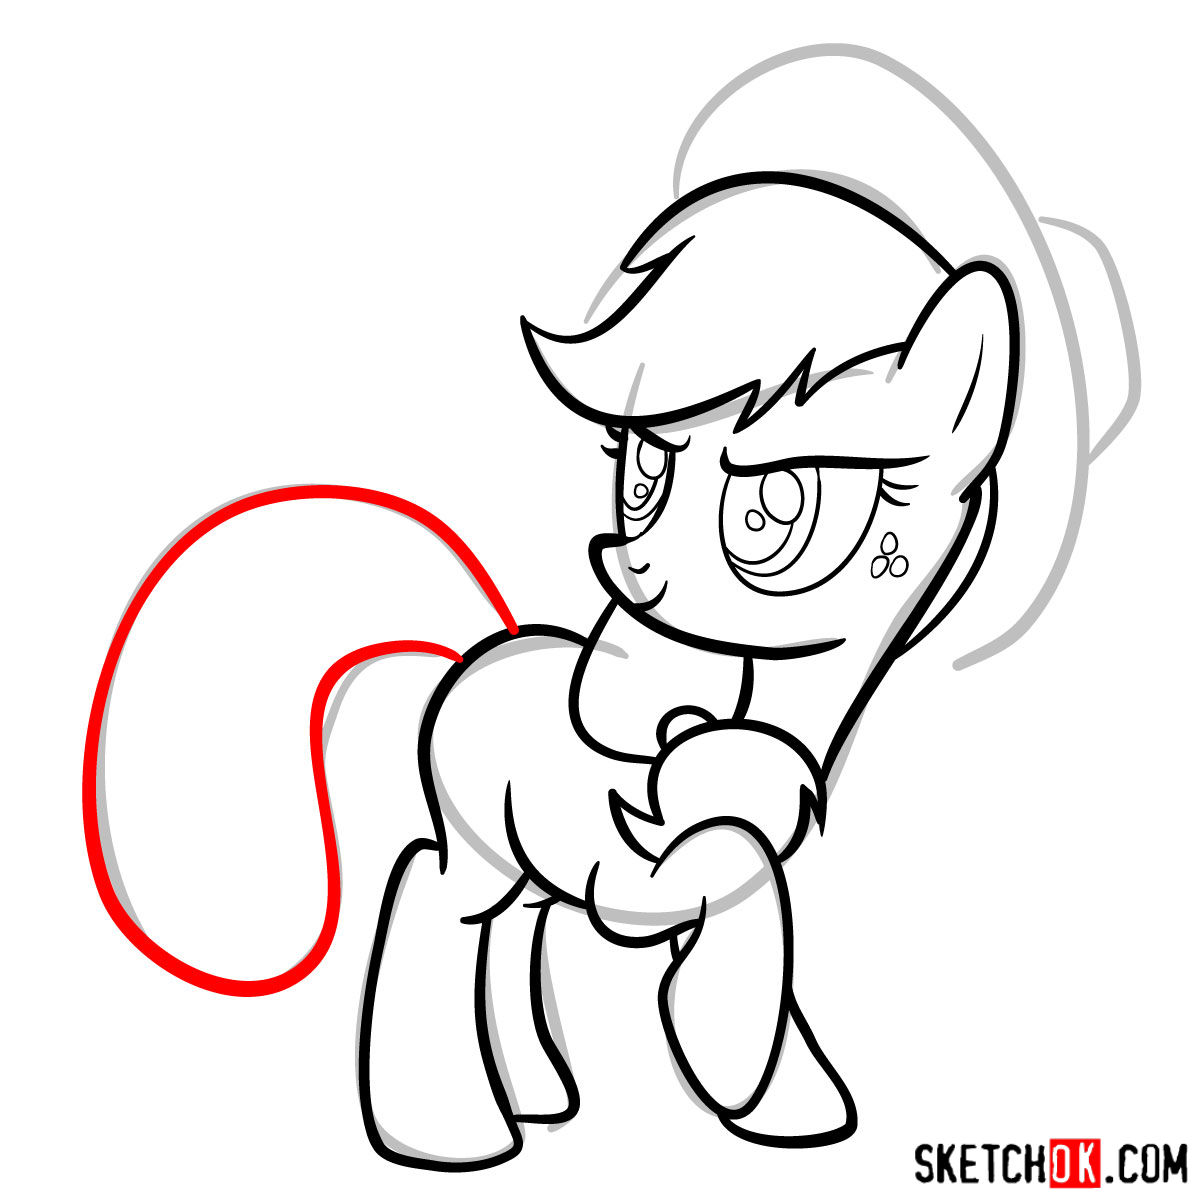 How to draw Applejack pony - step 11